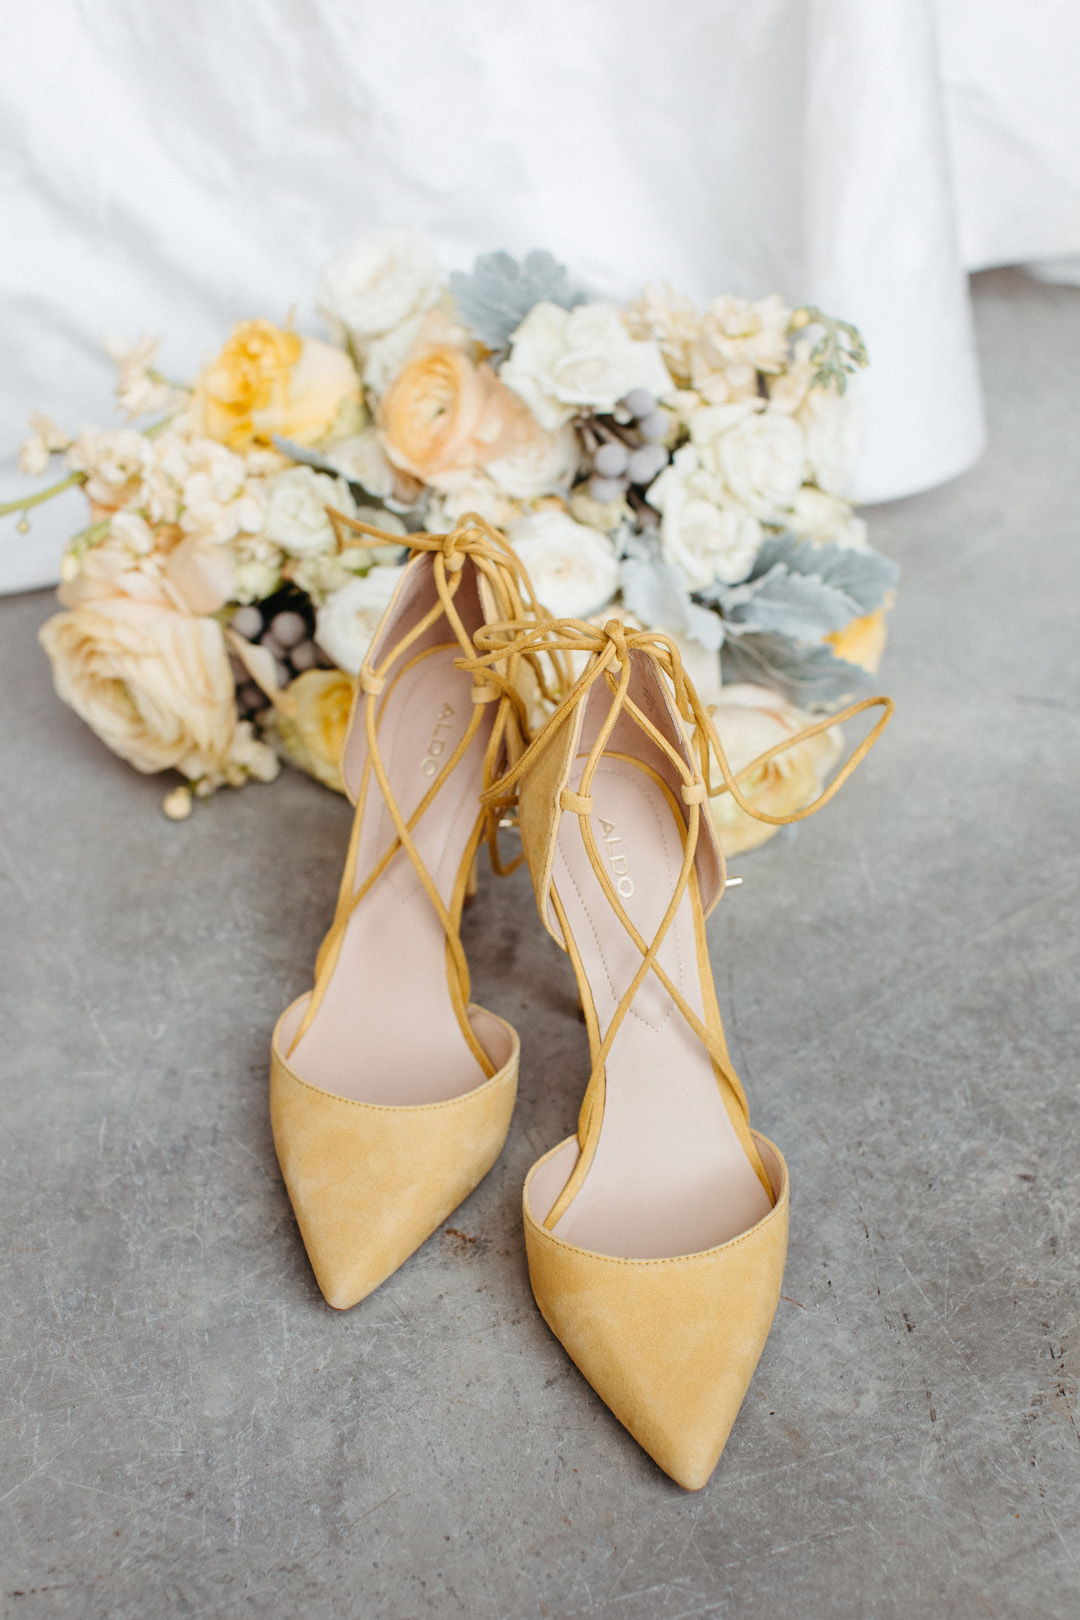 Pantone "Illuminating" wedding shoes | yellow wedding shoes | Nashville Bride Guide